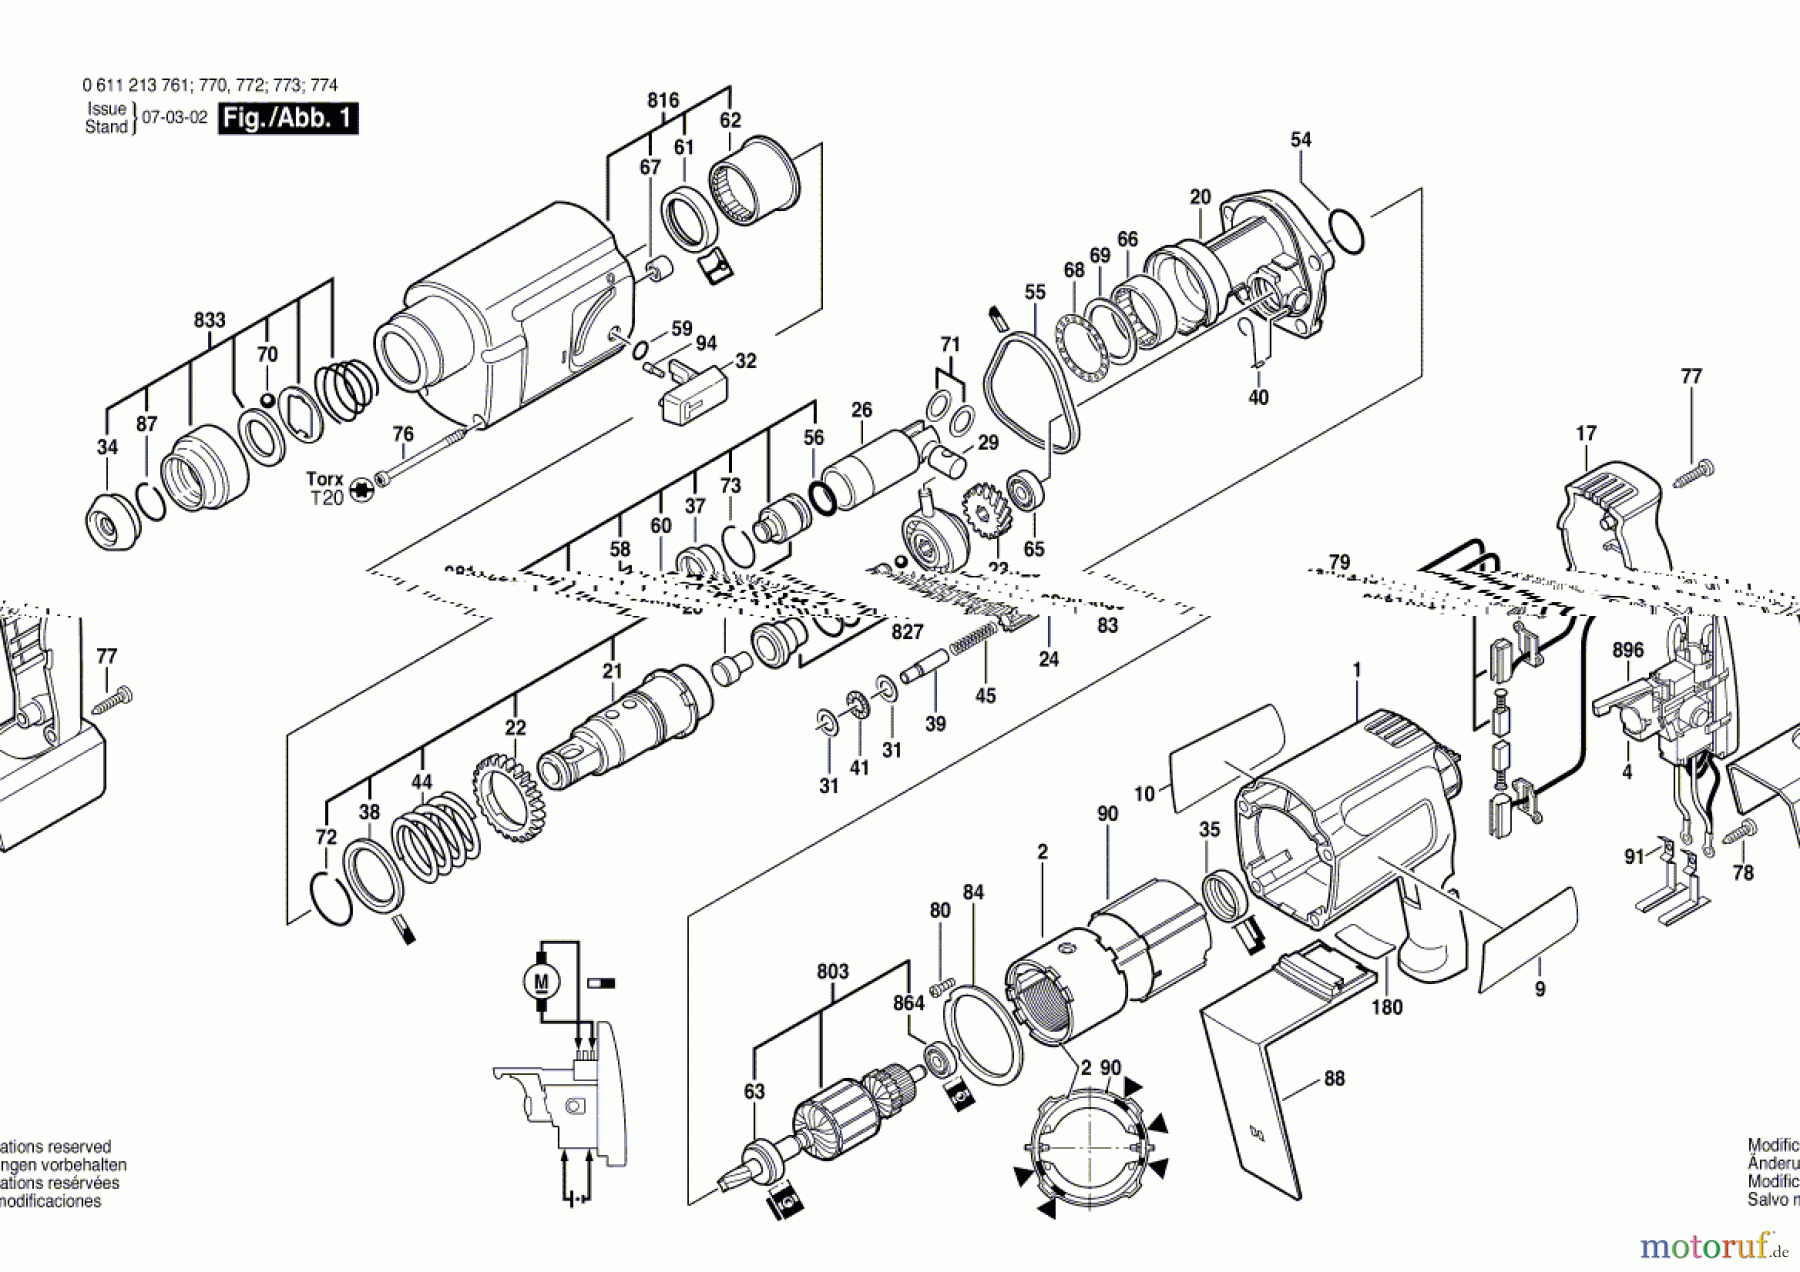  Bosch Akku Werkzeug Gw-Akku-Bohrhammer 324 VE Seite 1